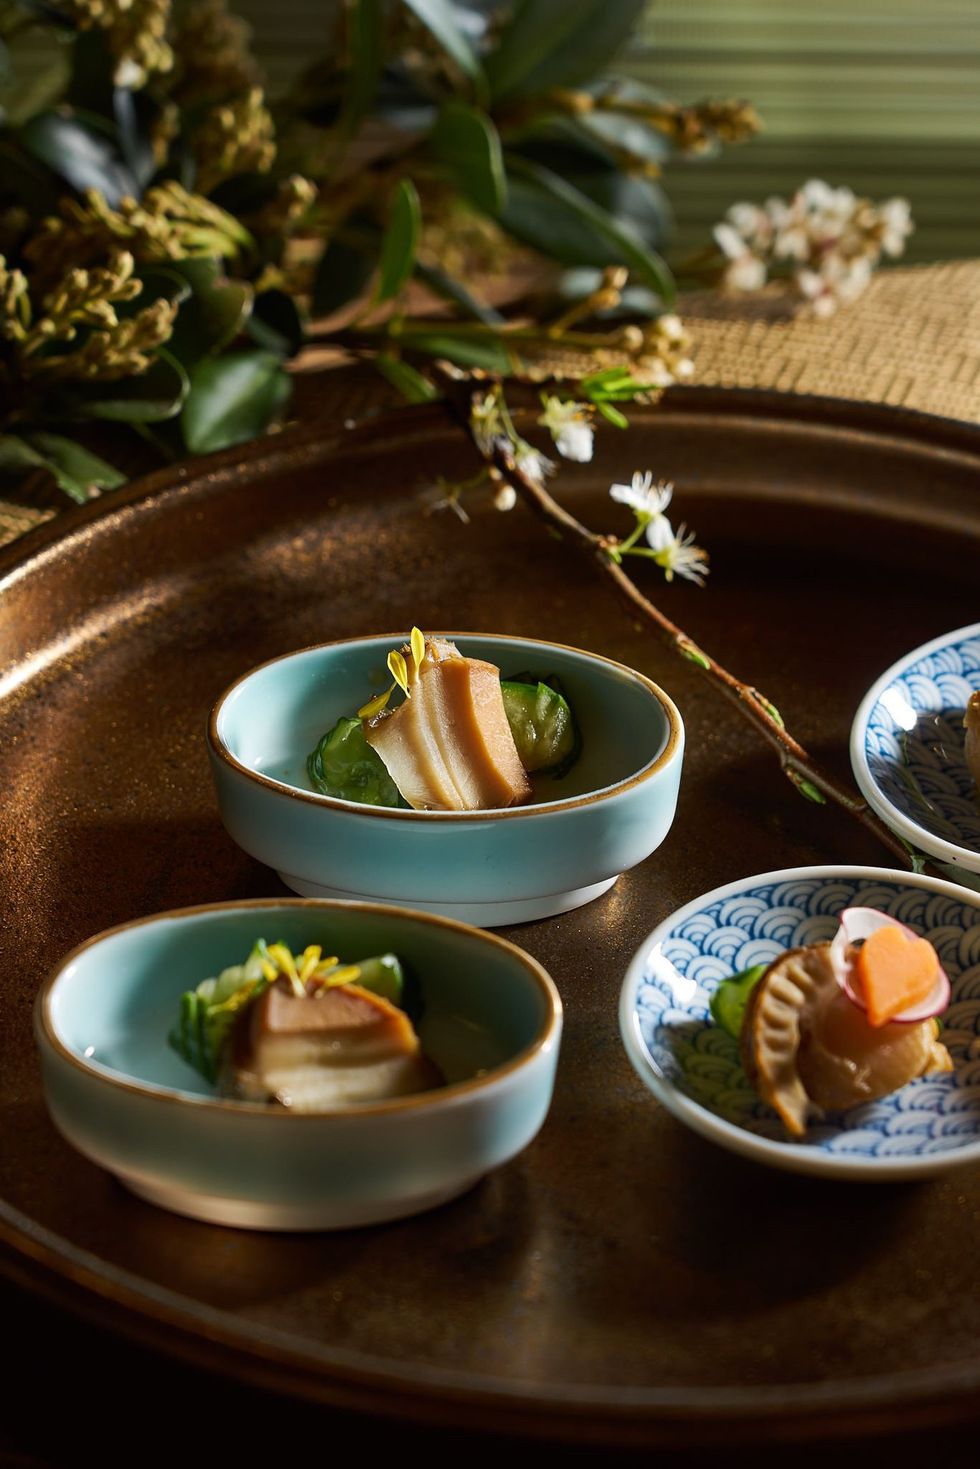 欣葉集團打造全新和⻝buffet餐廳「nagomi和⻝饗宴」